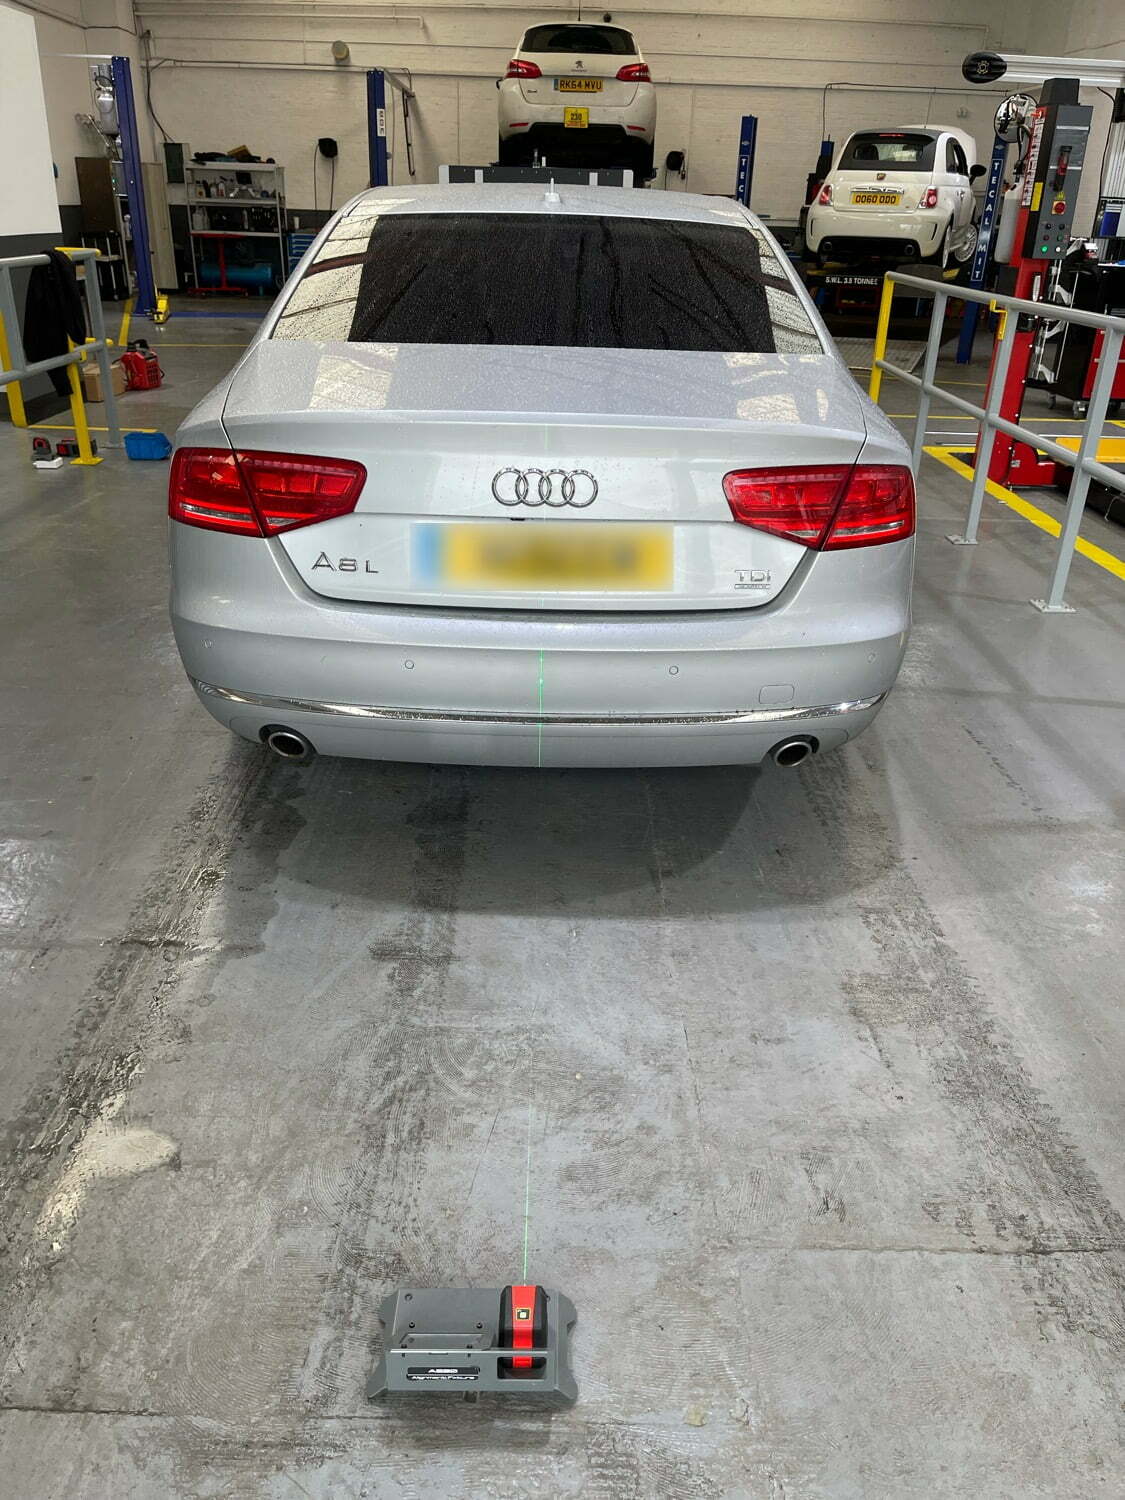 Audi waiting for MOT Check at Longton MOT Test Centre in Stoke-on-trent